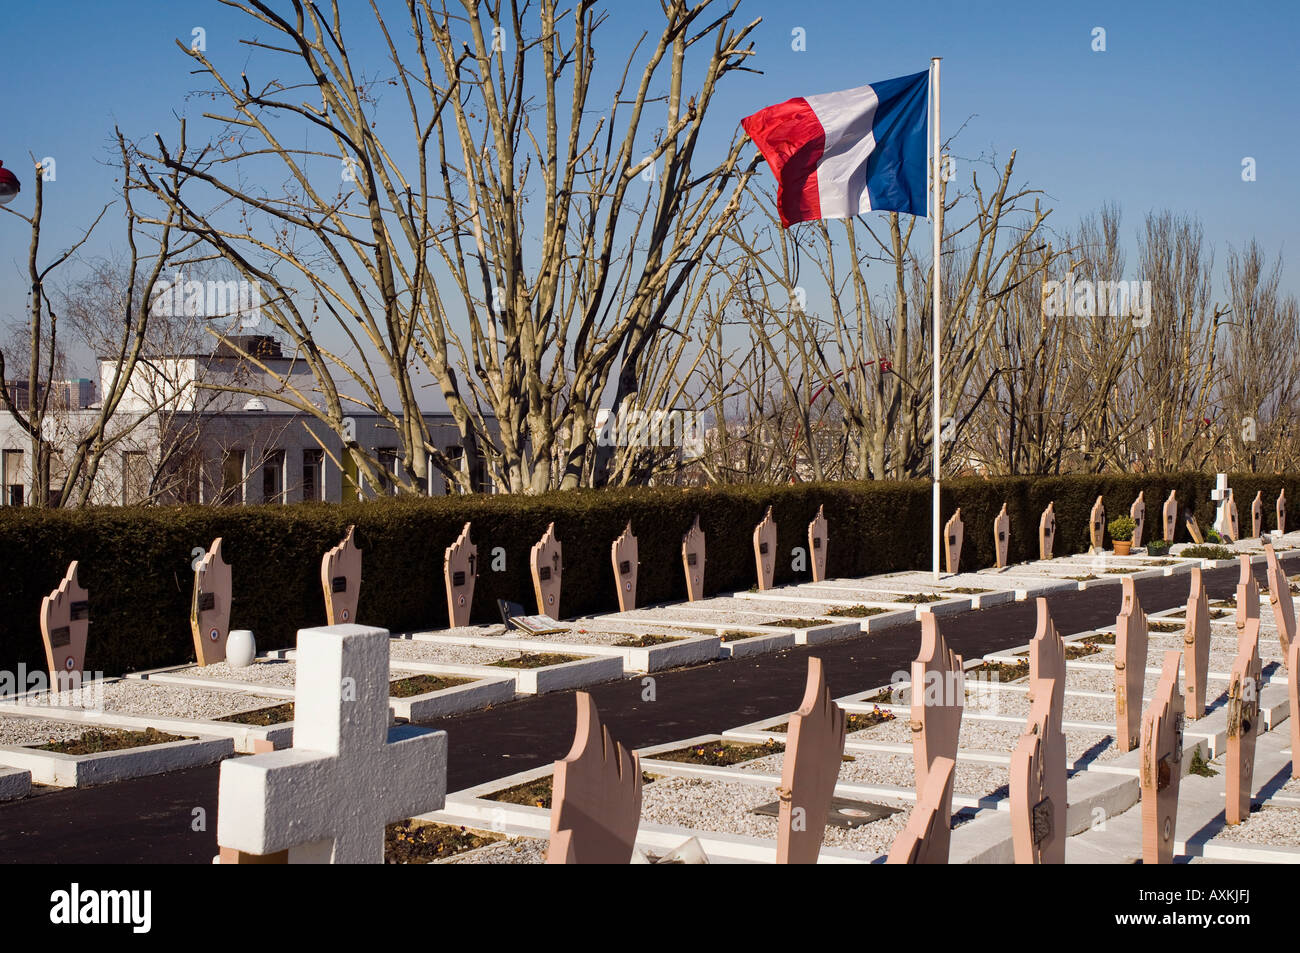 Francia la bandera tricolor ondea sobre guerra militar tumbas en el cementerio de lilas. Les Lilas, un suburbio de París. Foto de stock